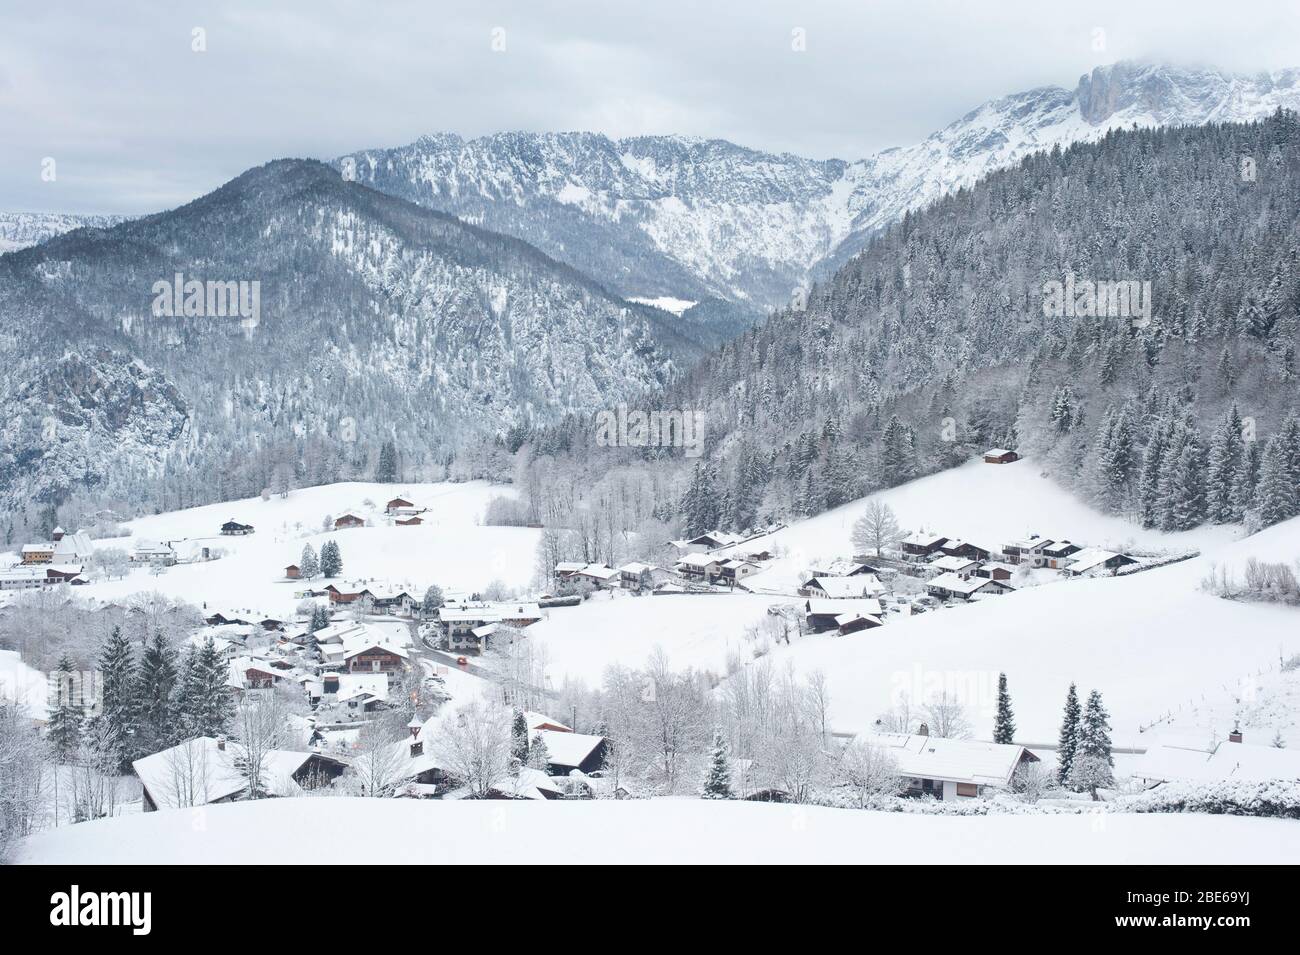 Village entouré de montagnes enneigées et de forêt, Berchtesgaden, Allemagne, Europe Banque D'Images